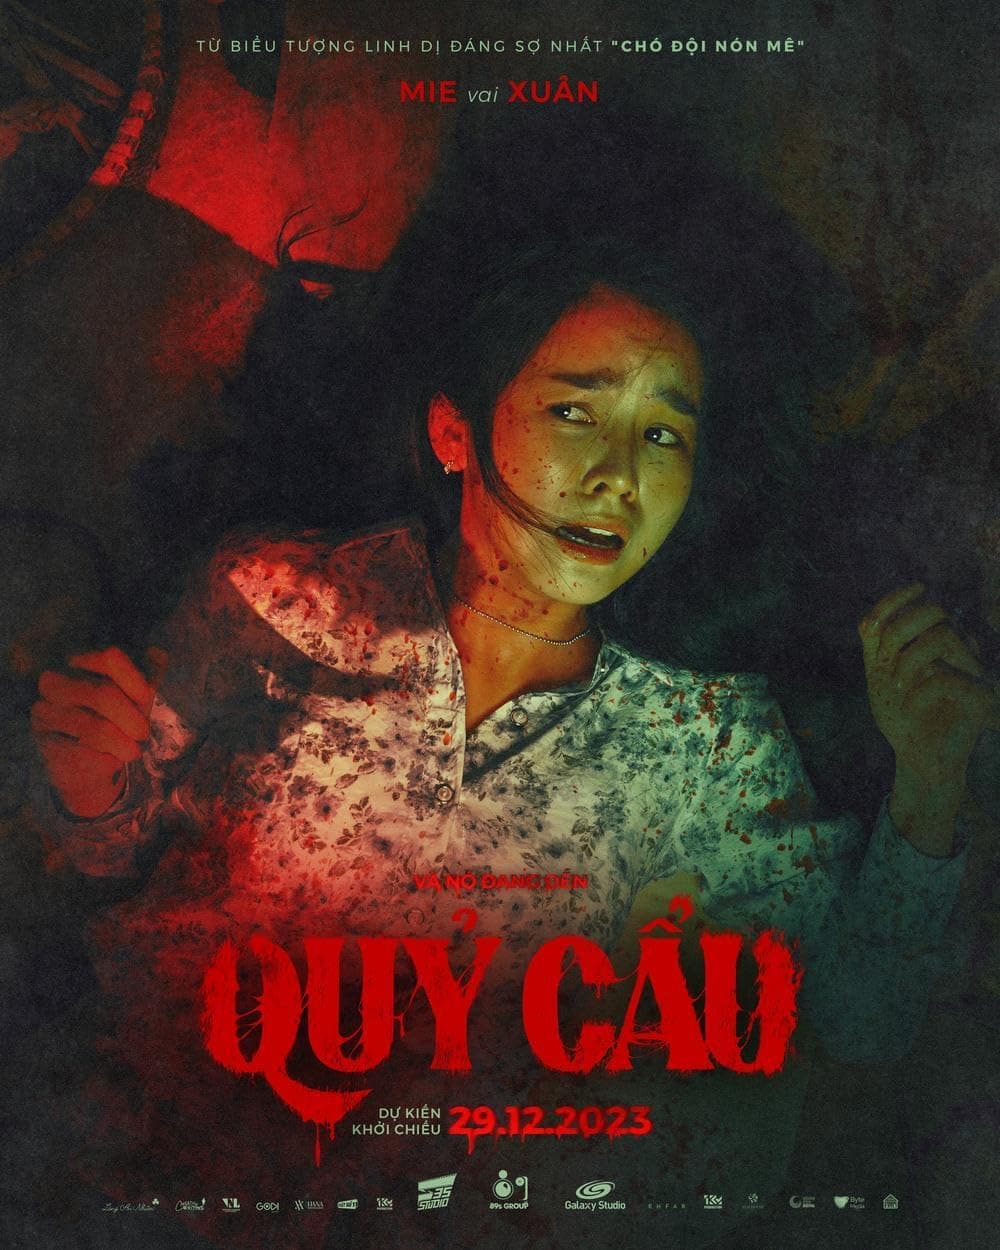 Постер мистического фильма ужасов Crimson Snout (Quy Cau) - 03